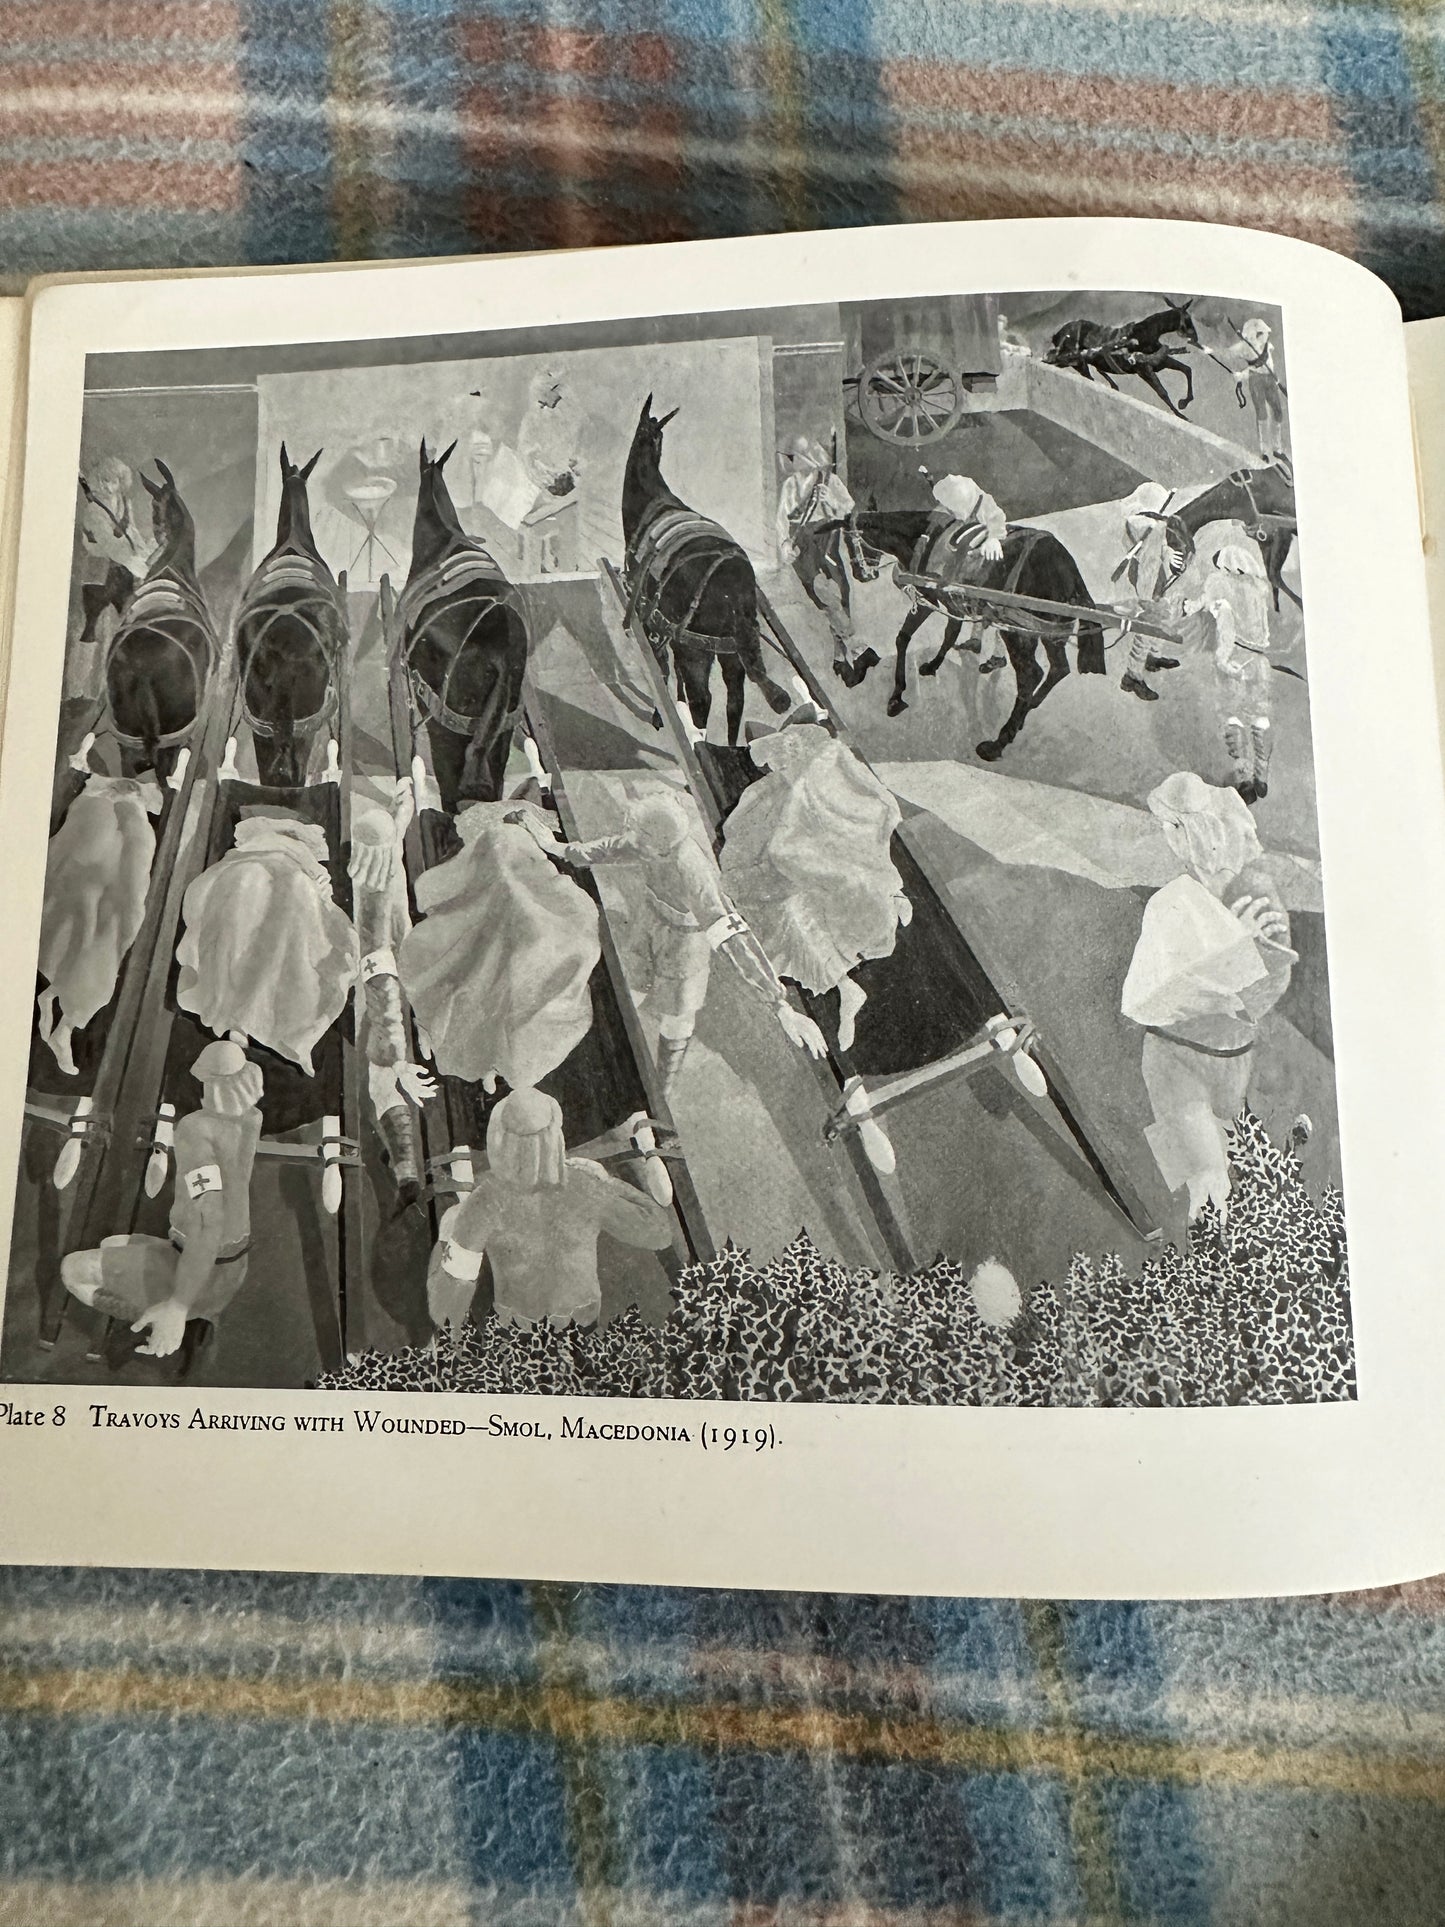 1947 Stanley Spencer(Penguin Modern Painters) Penguin Books